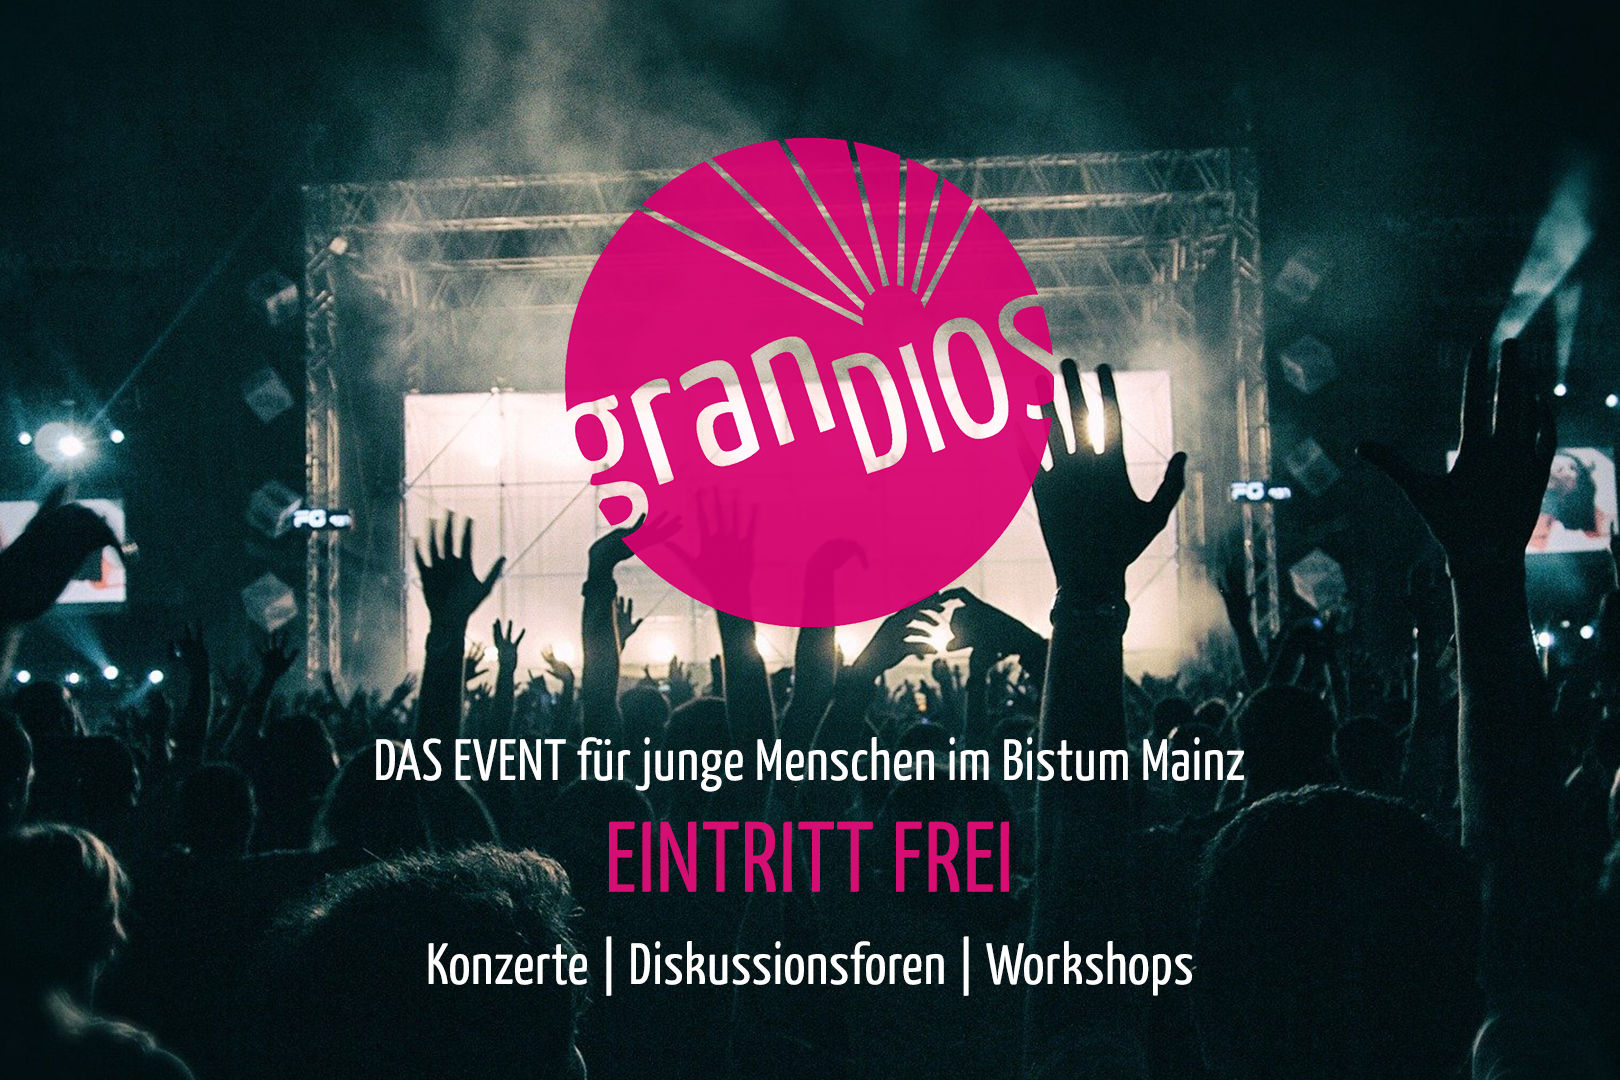 GranDIOS - Das Event für junge Menschen im Bistum Mainz